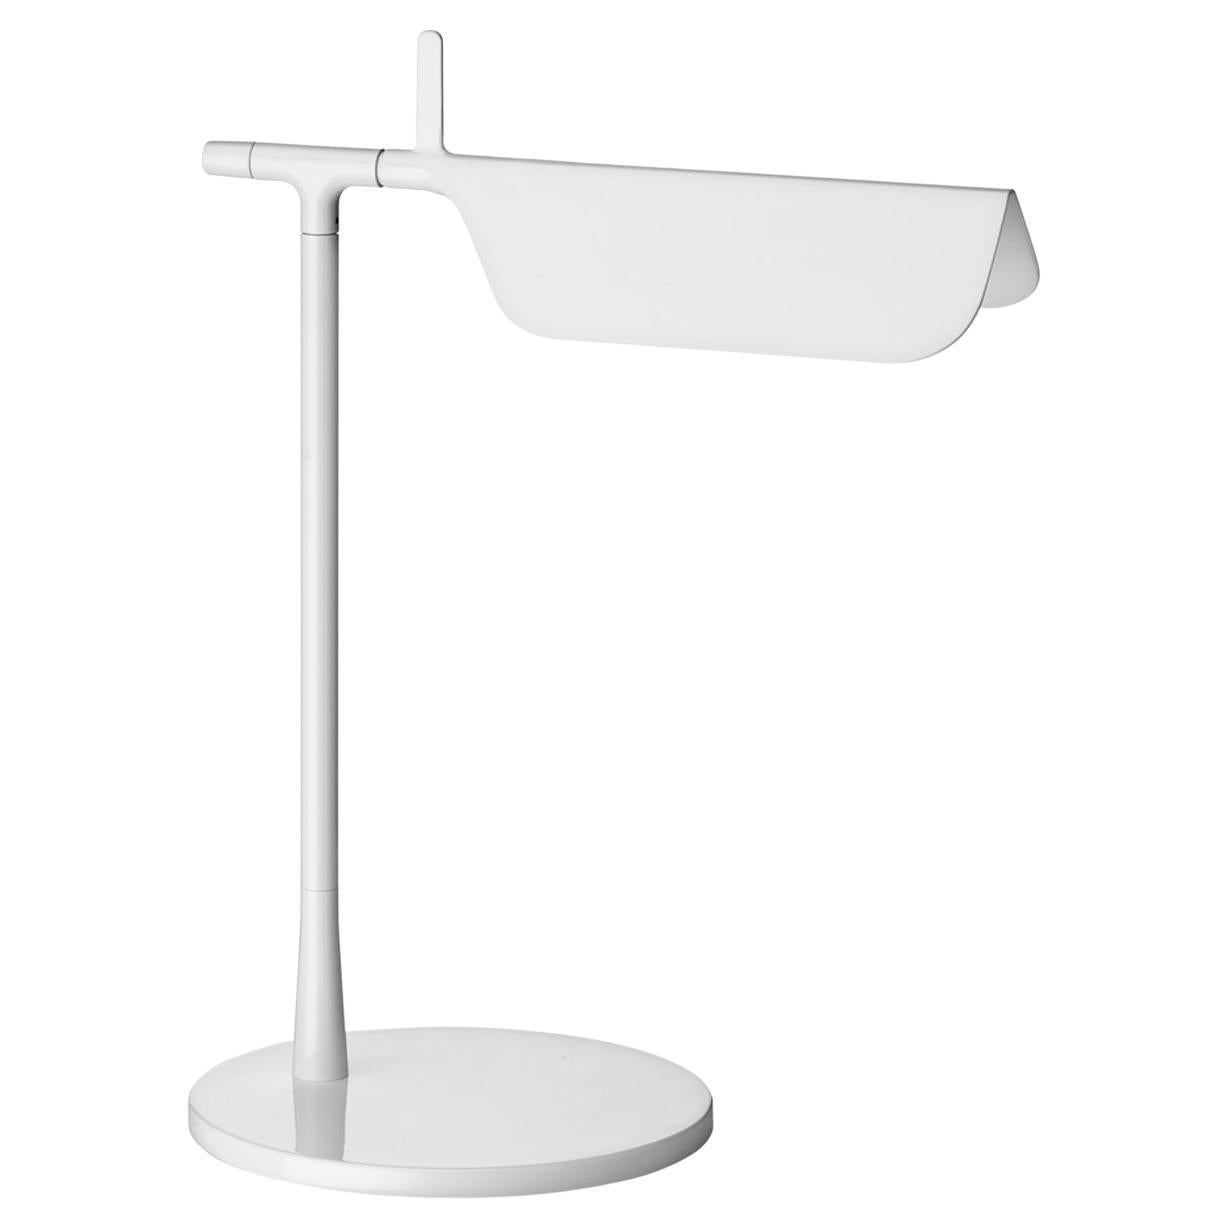 Flos Tab Tisch LED Lampe 2700K mit Dimmer 90° drehbarer Kopf, Weiß